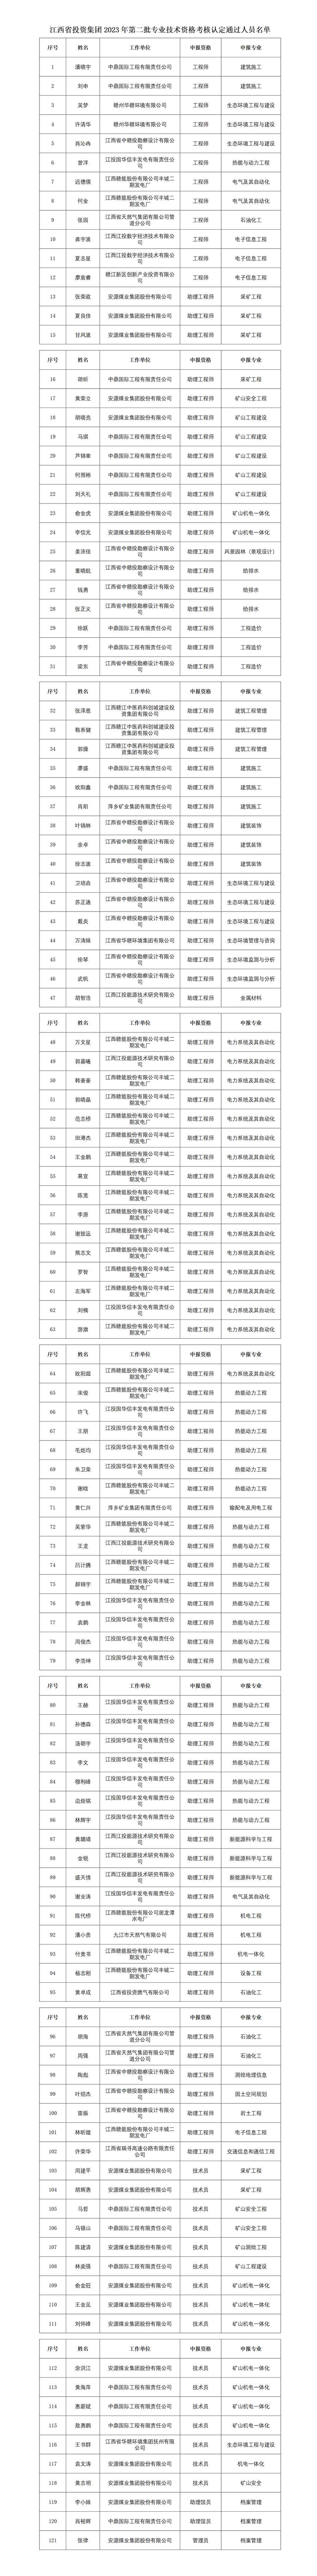 2023年江西省投资IOS/Android通用版/手机app第二批专业技术资格考核认定通过人员名单公示_01(1).png